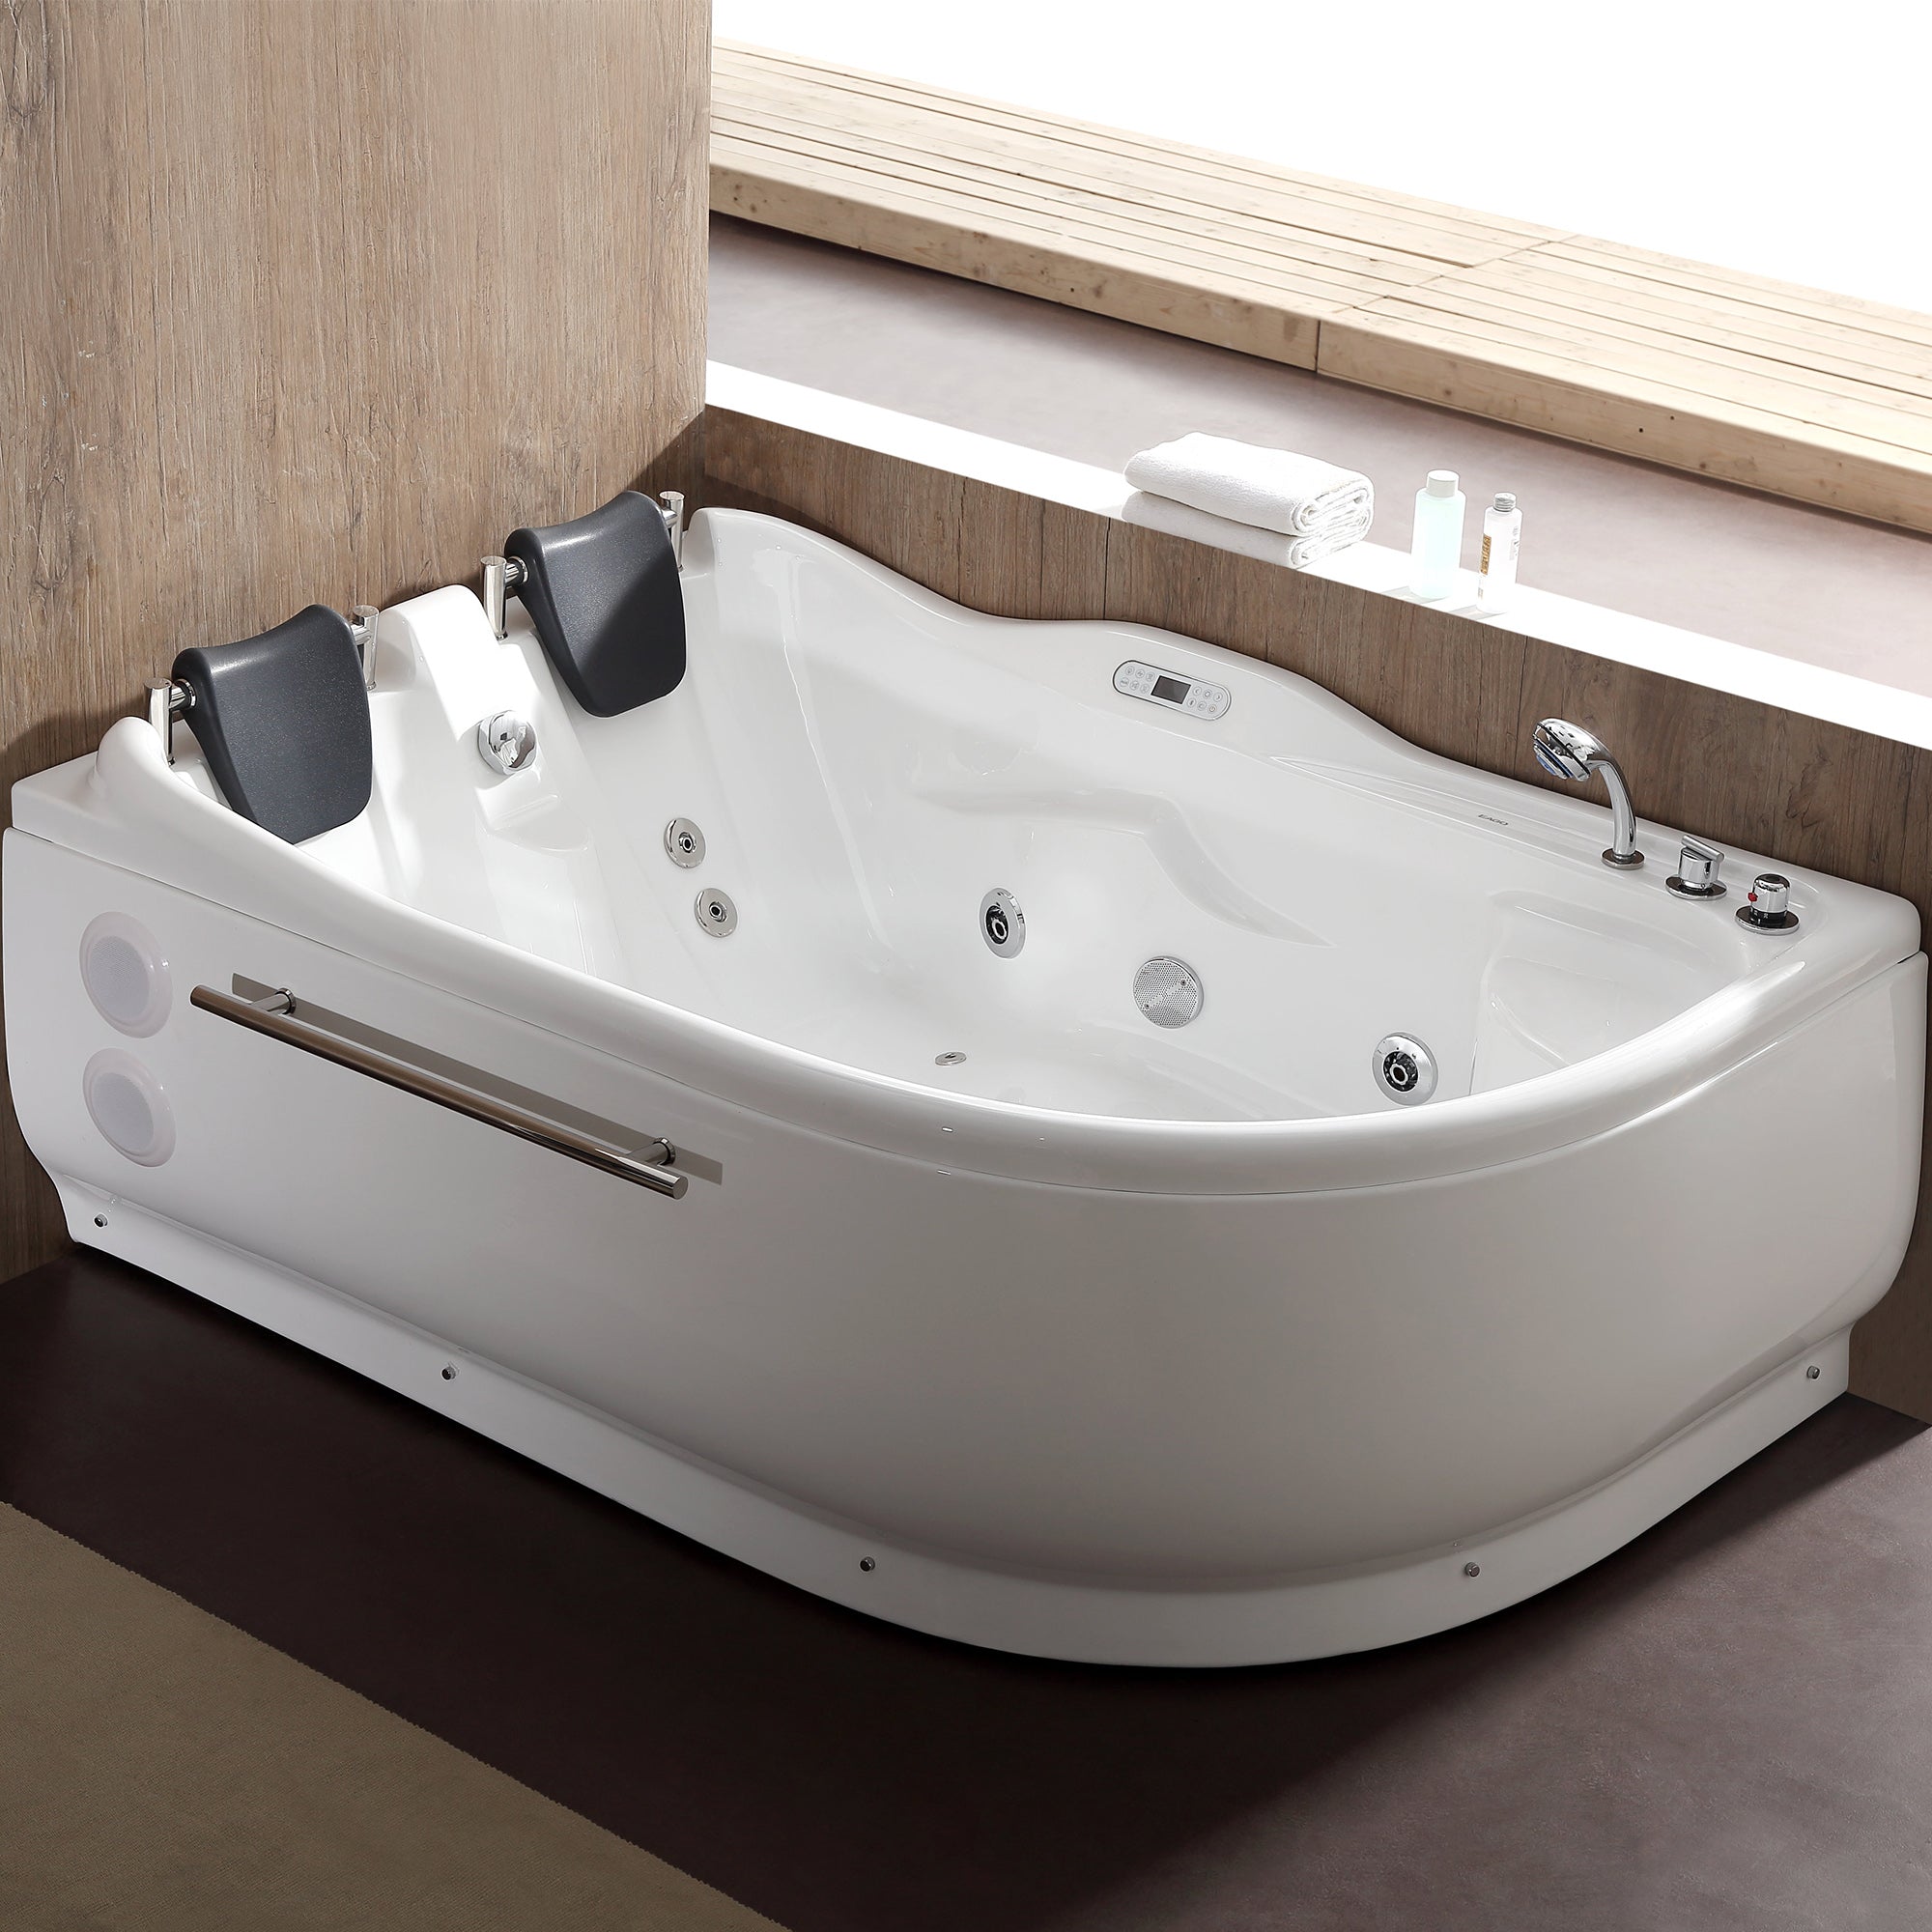 Eago AM124ETL-R 6' Right Corner Acrylic White Whirlpool Bathtub for 2